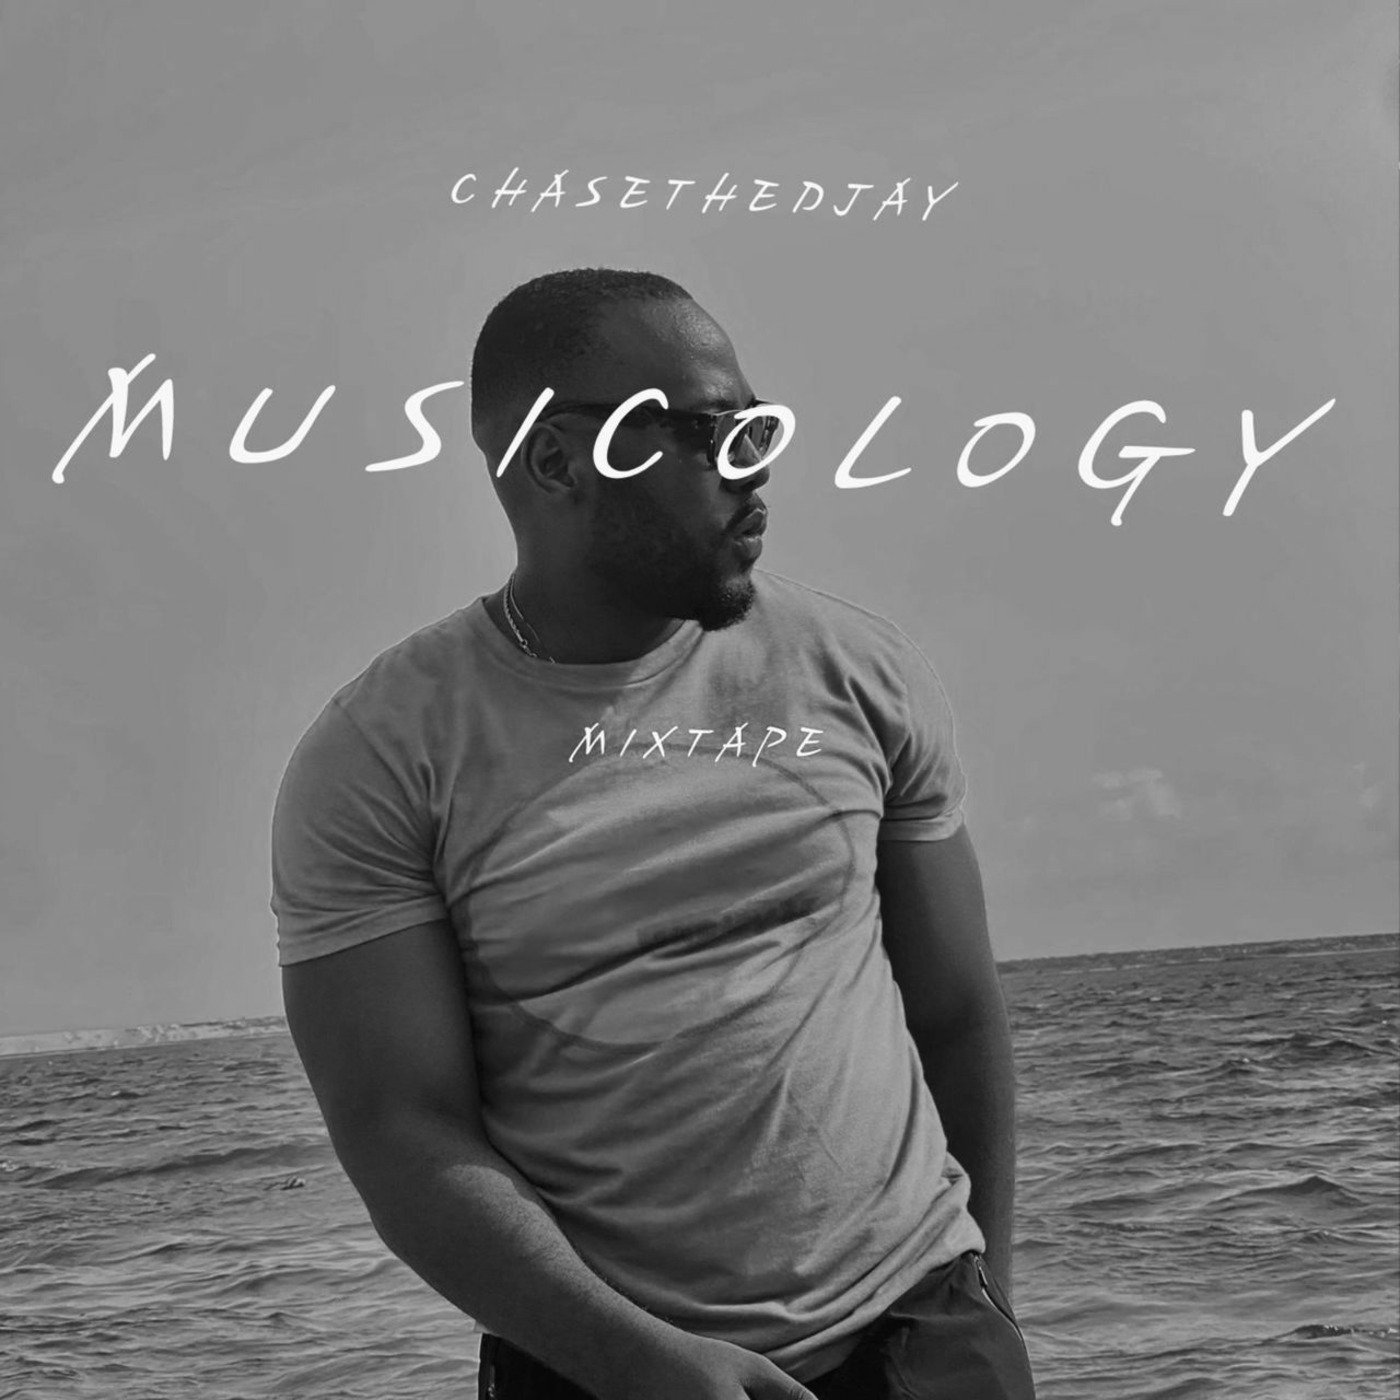 Chasethedjay- Musicology